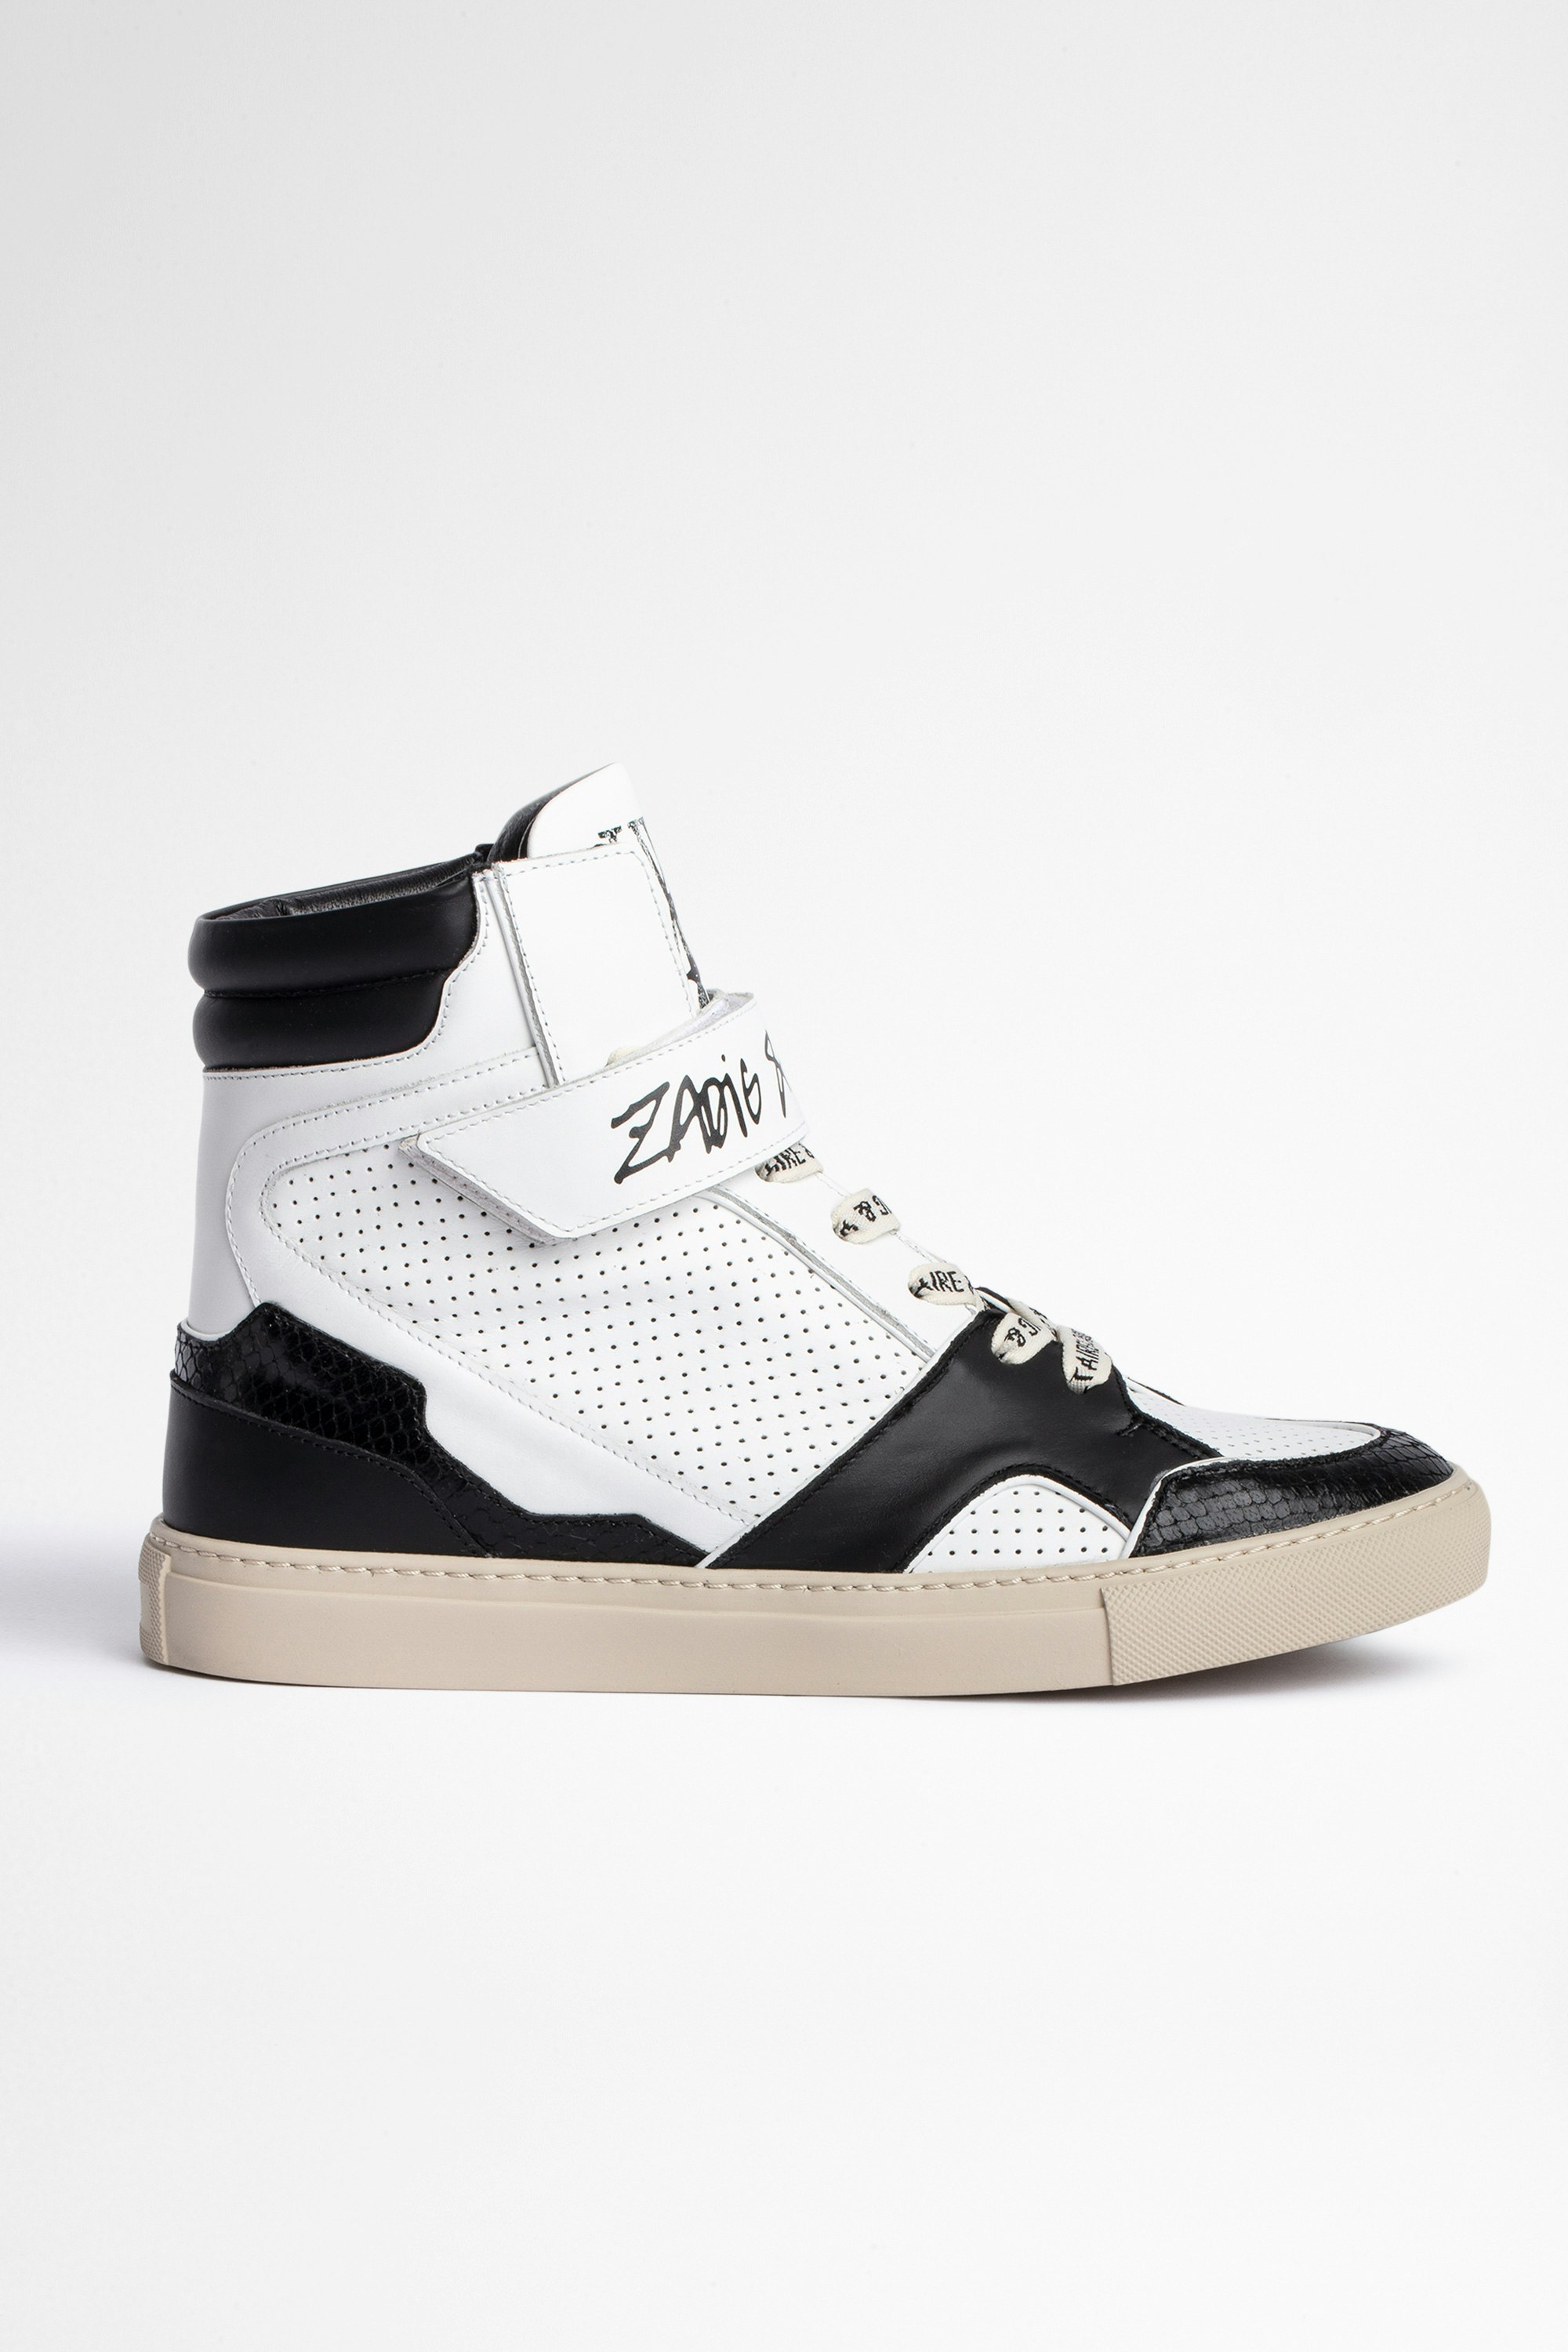 Sneakers ZV1747 High Flash Damen-Sneakers mit hohem Schaft aus zweifarbig Leder. Mit dem Kauf dieses Produkts unterstützen Sie eine verantwortungsvolle Lederproduktion gemäß der Leather Working Group.
